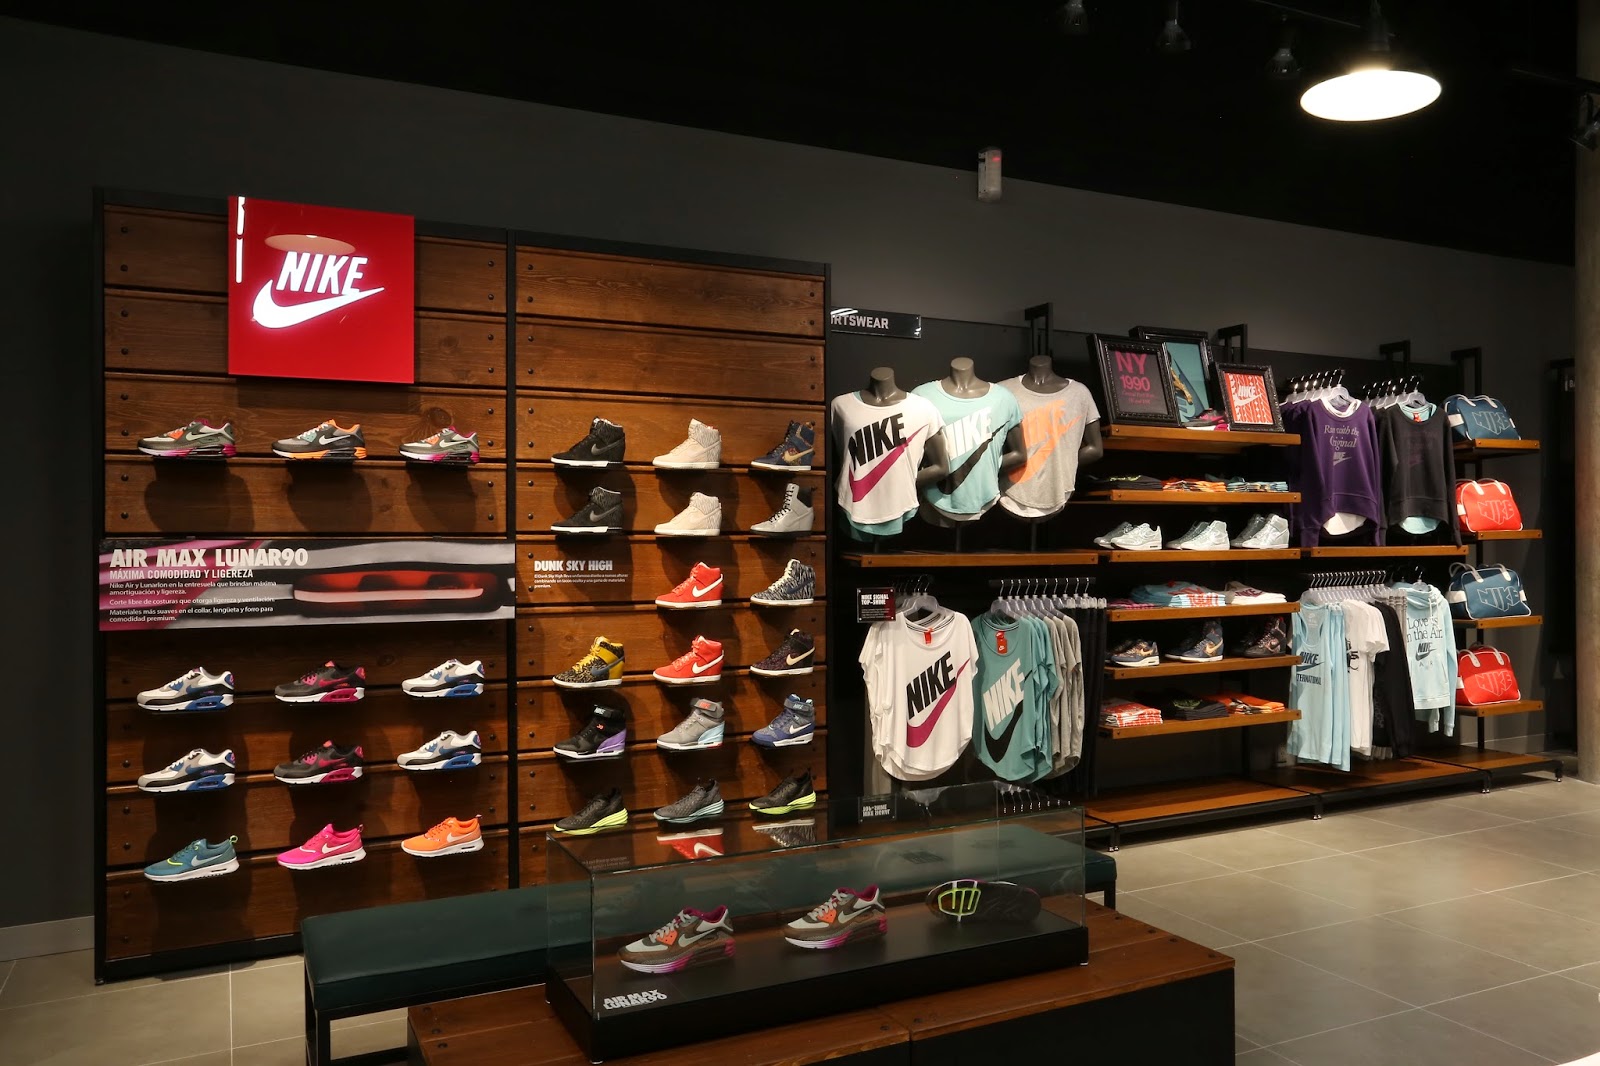 Extra tarjeta No de moda Promociones Nike Plazas Outlet Shop, SAVE 53%.